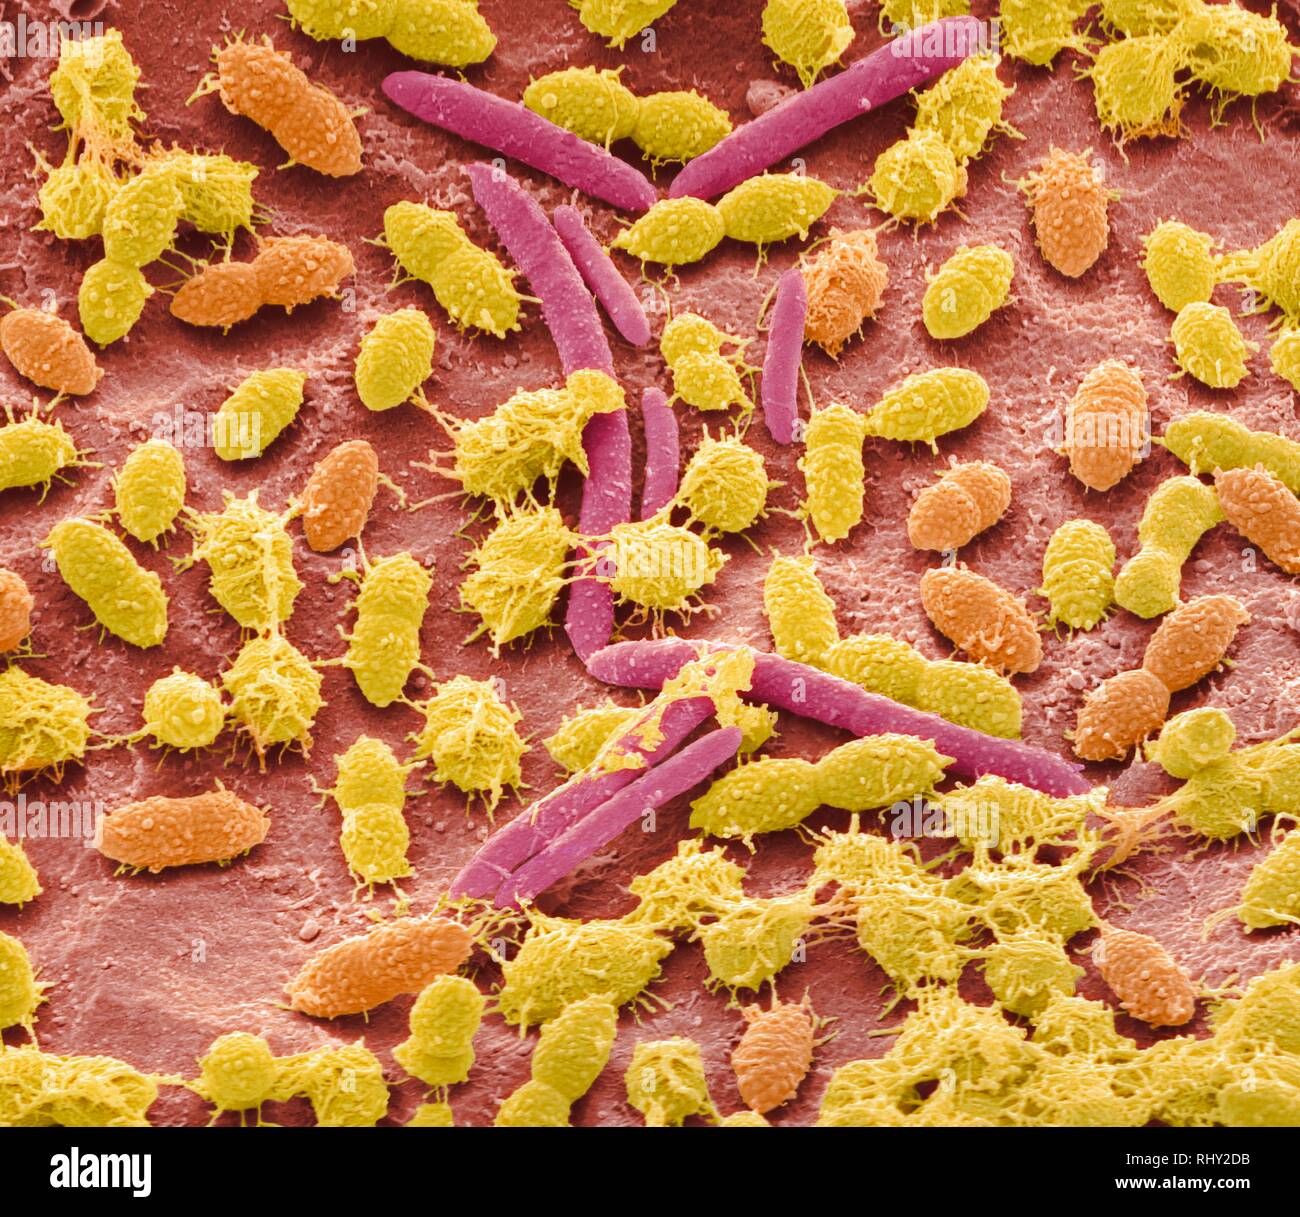 Les bactéries fécales, sem Banque D'Images